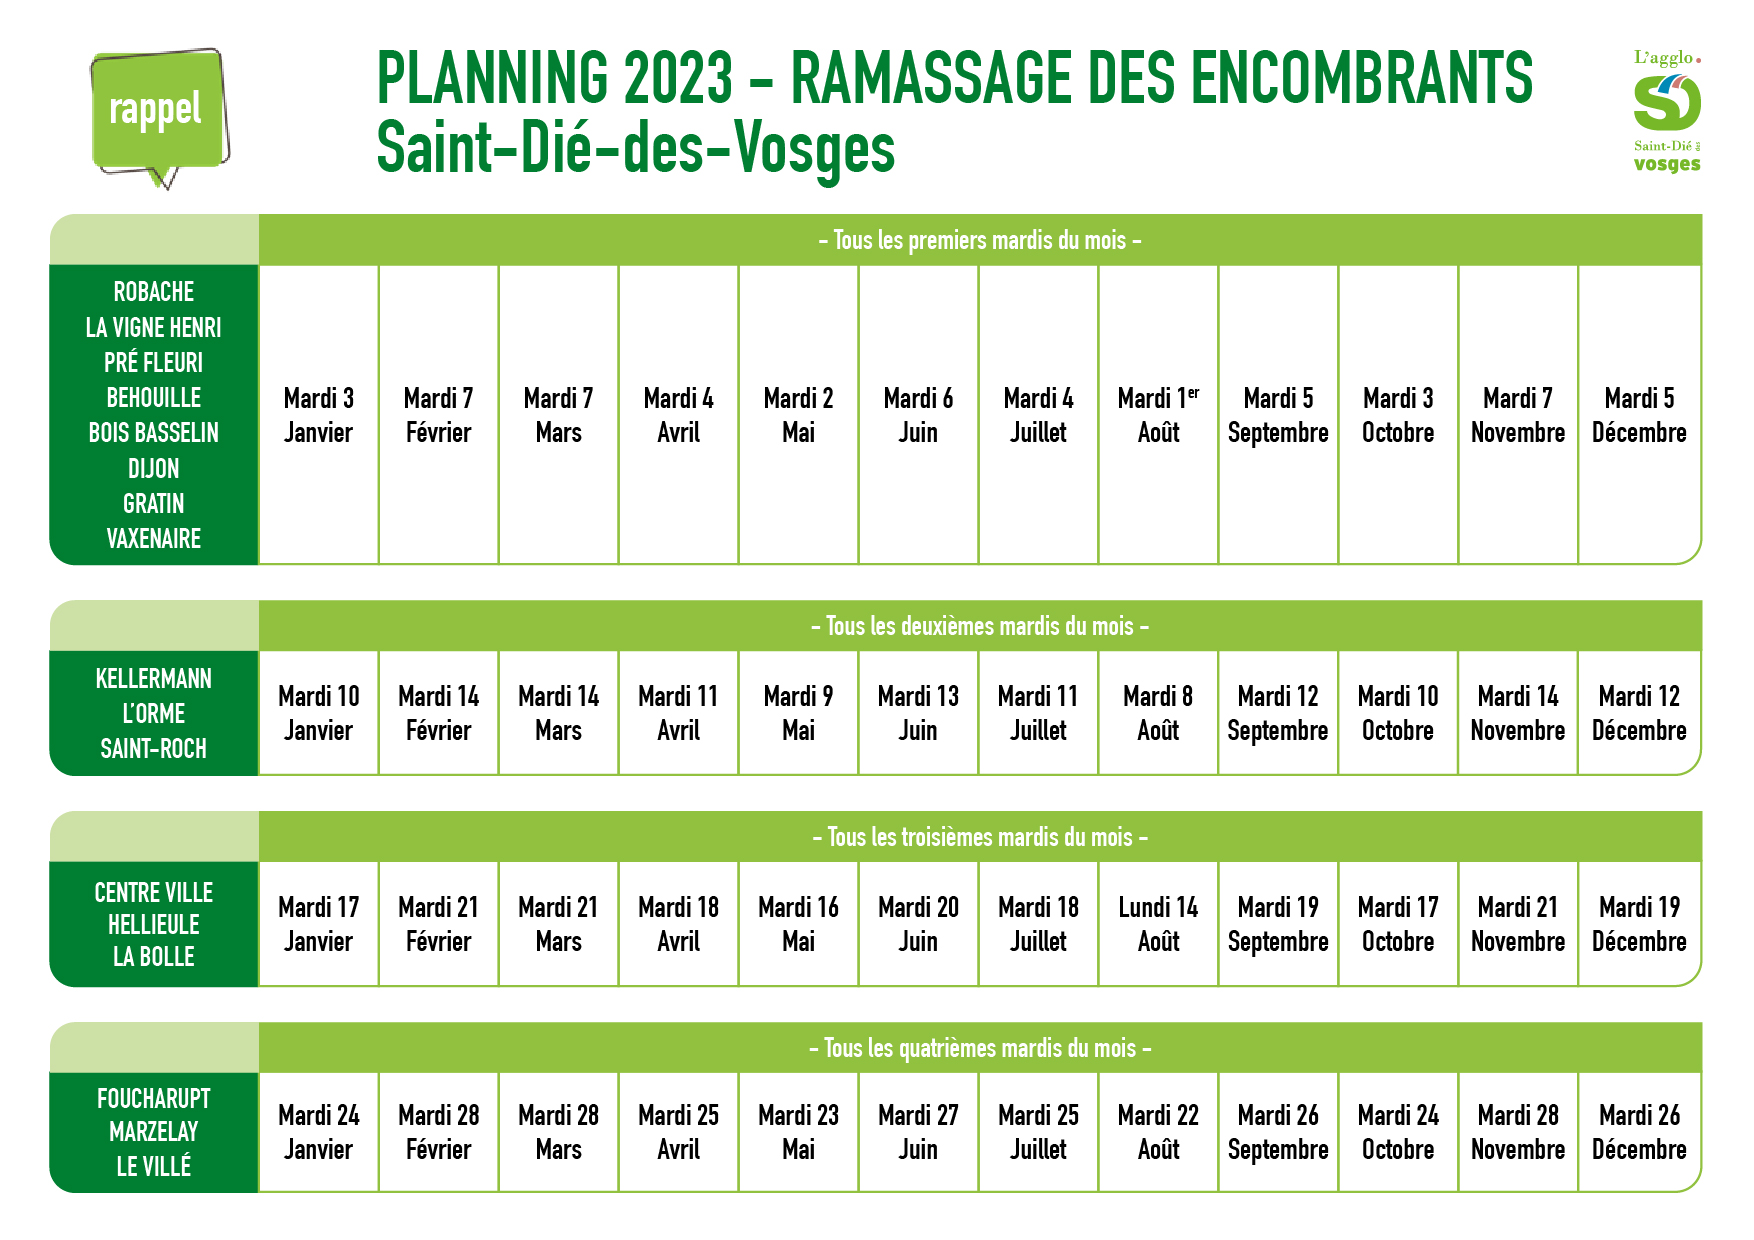 Planning 2023 du ramassage des encombrants à Saint-Dié-des-Vosges